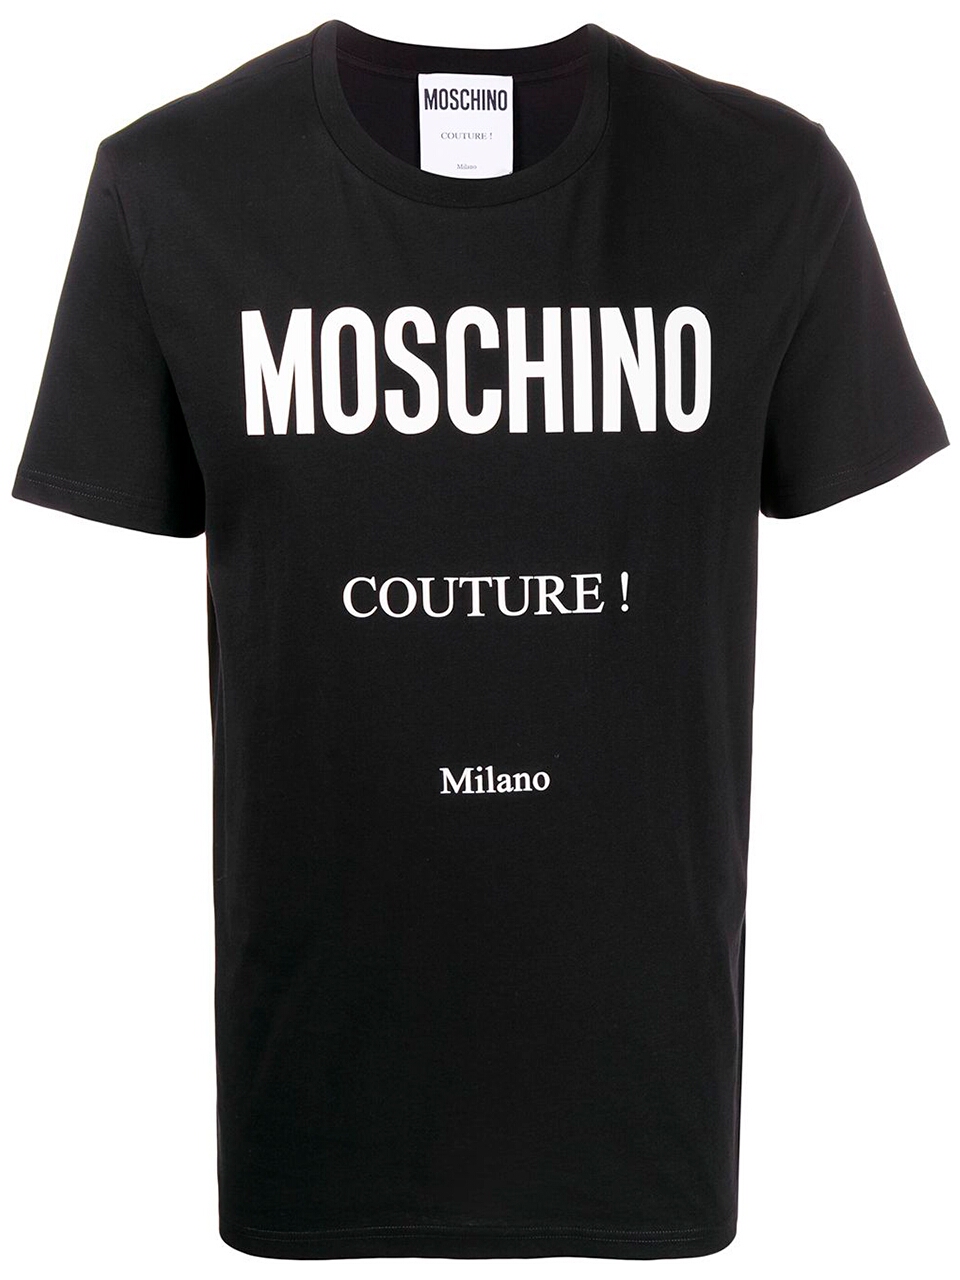 Imagem de: Camiseta Moschino Preta com Logo Couture Branco